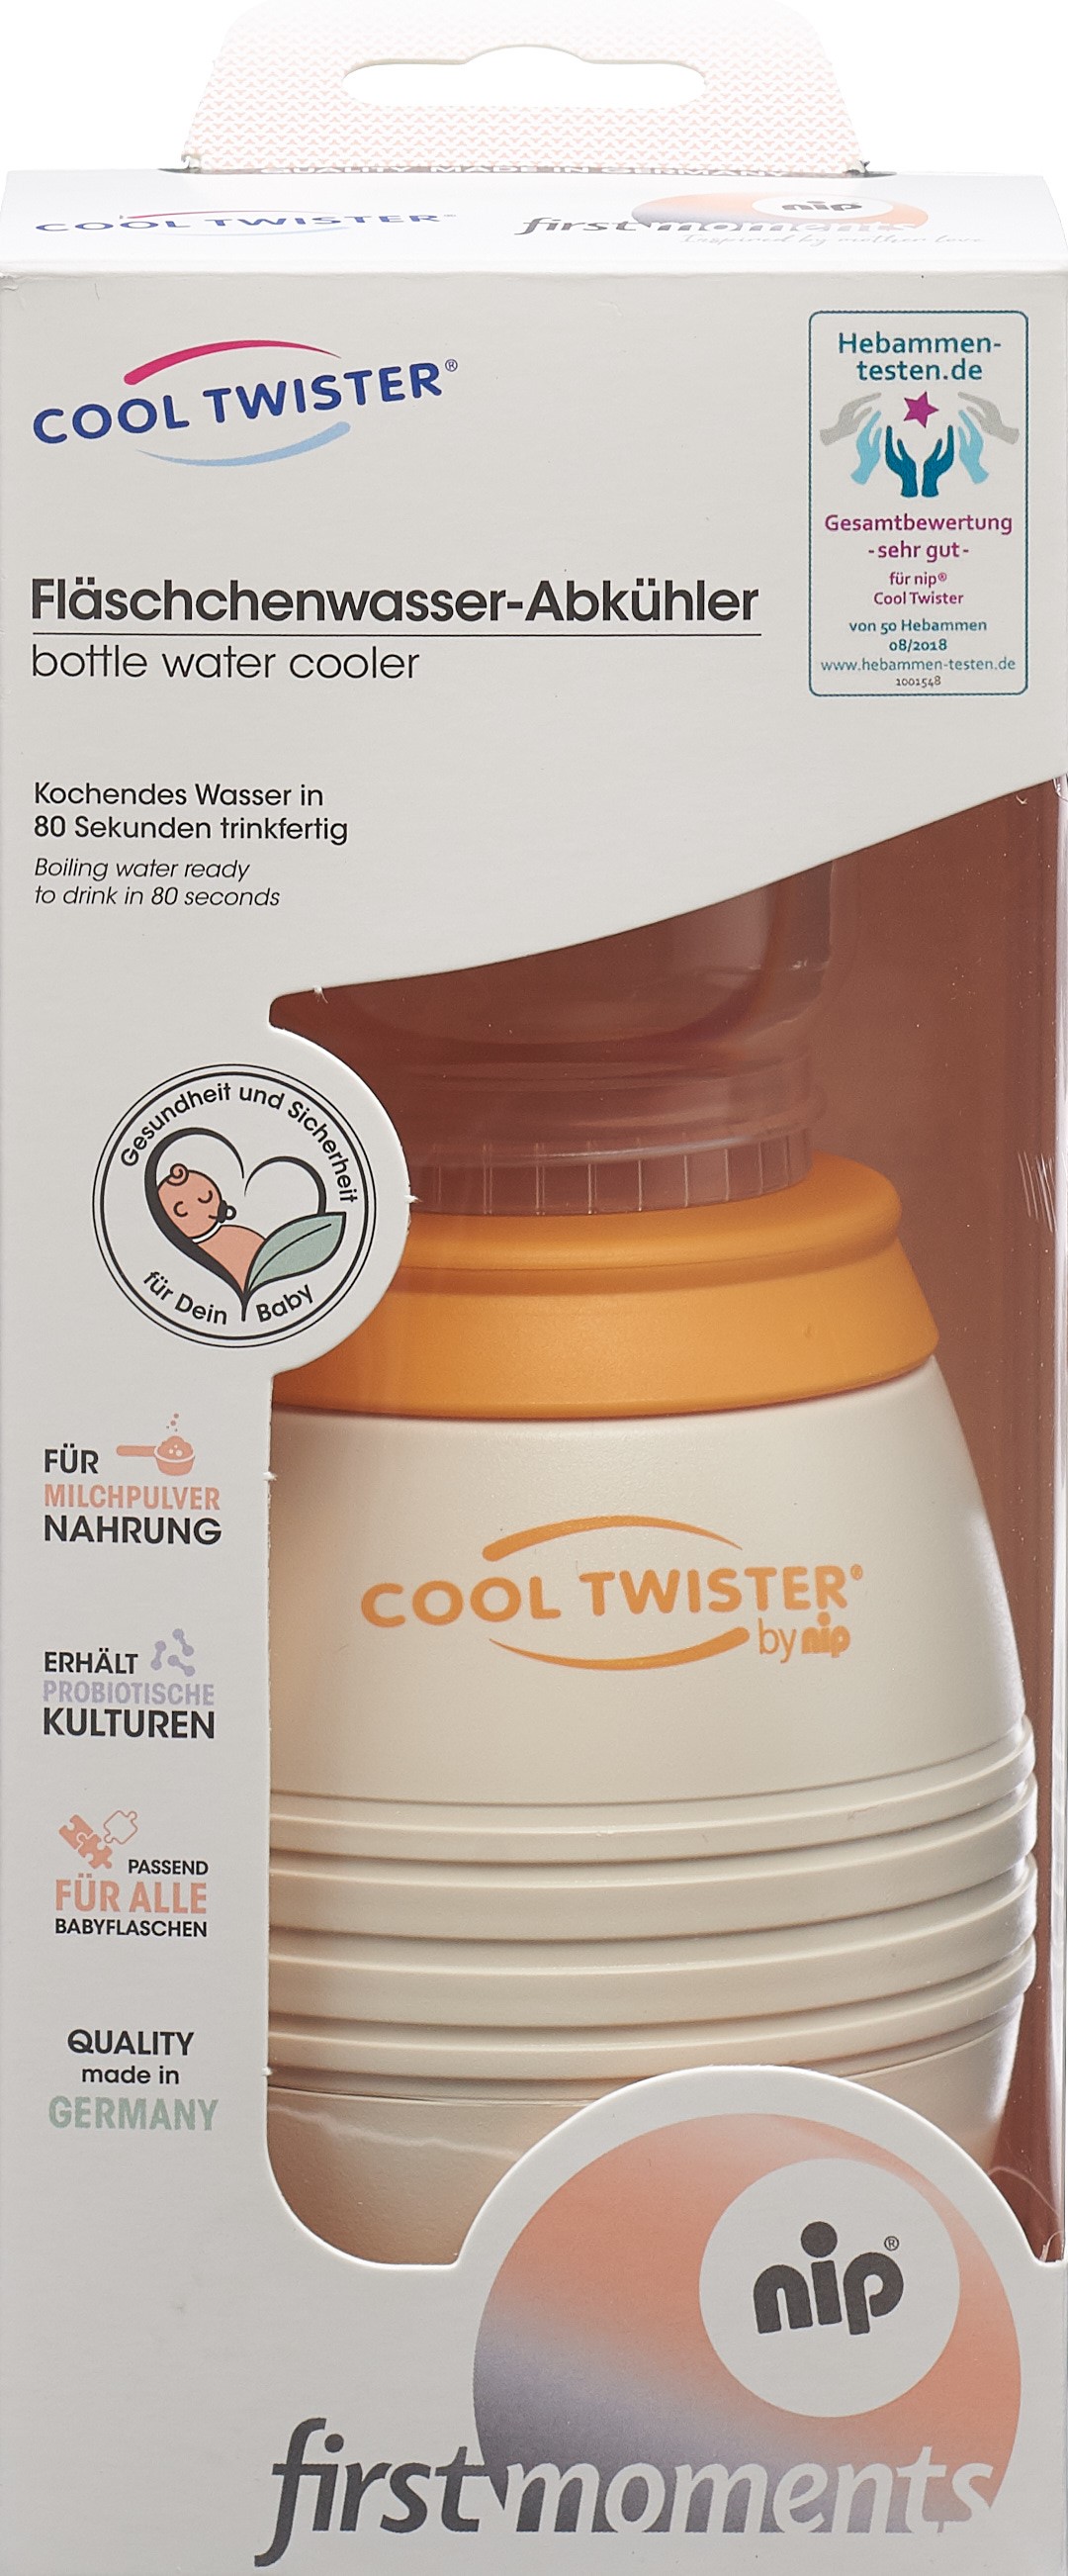 NIP Cool Twister Fläschchenwasser Abkühler - Online kaufen - Bimbosan